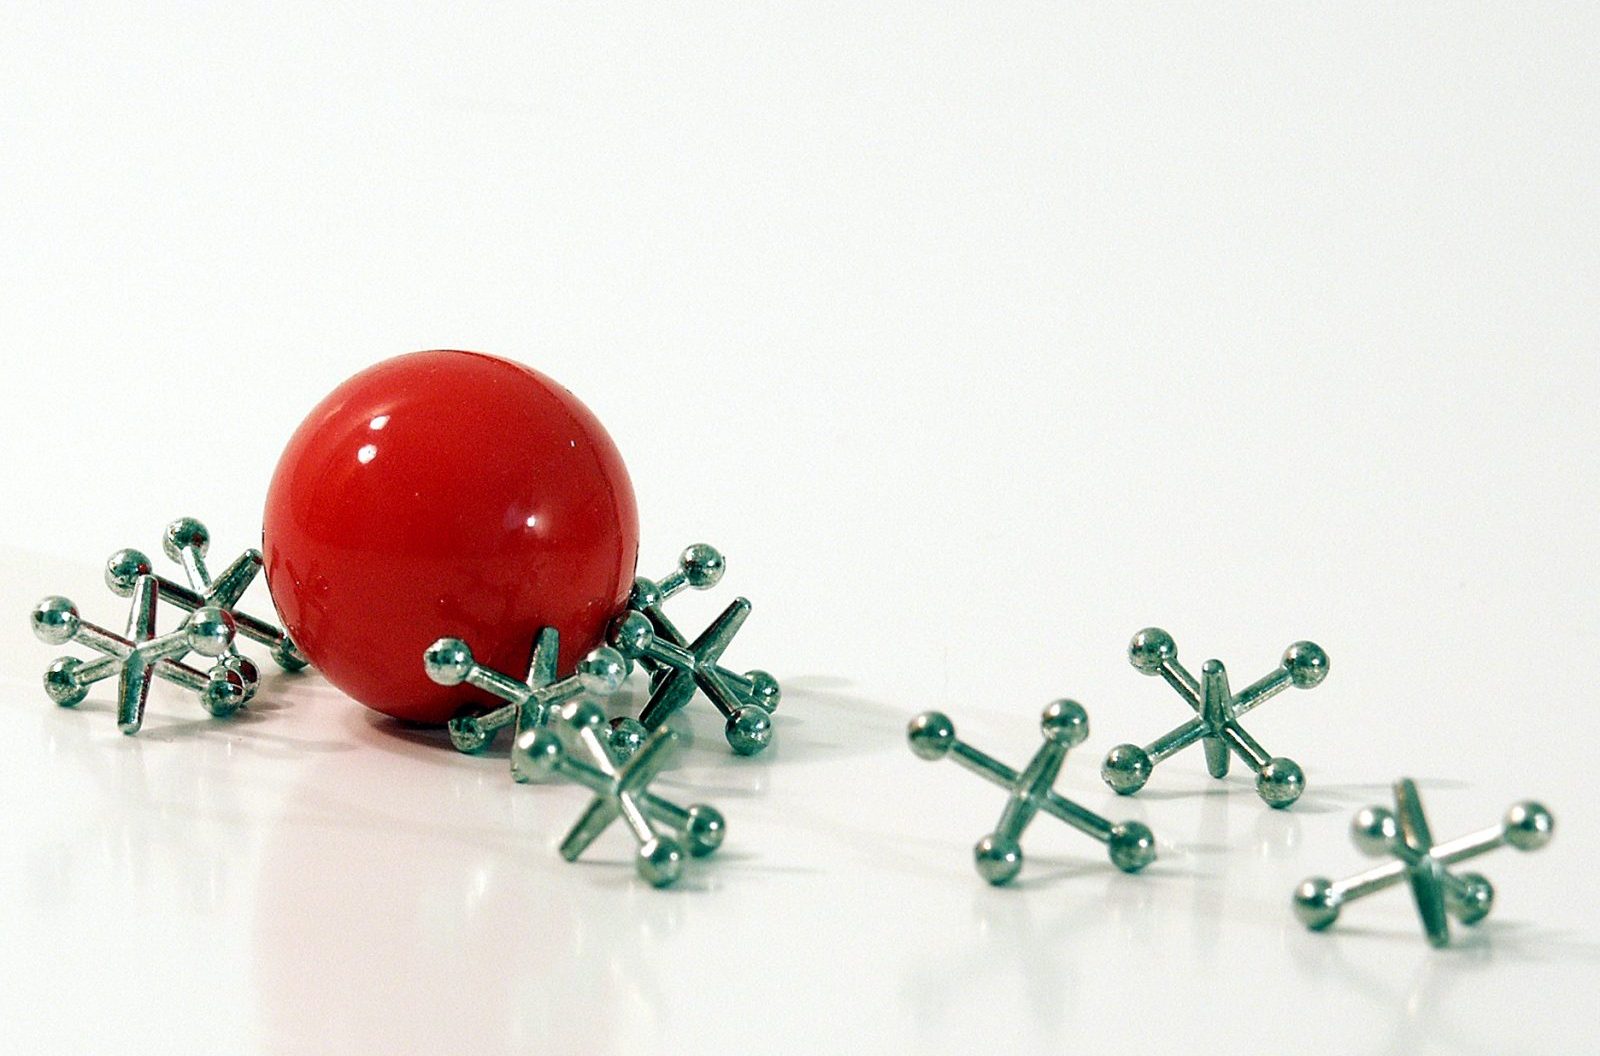 Una pequeña y brillante pelota roja junto a varios jacks de metal sobre un fondo blanco.